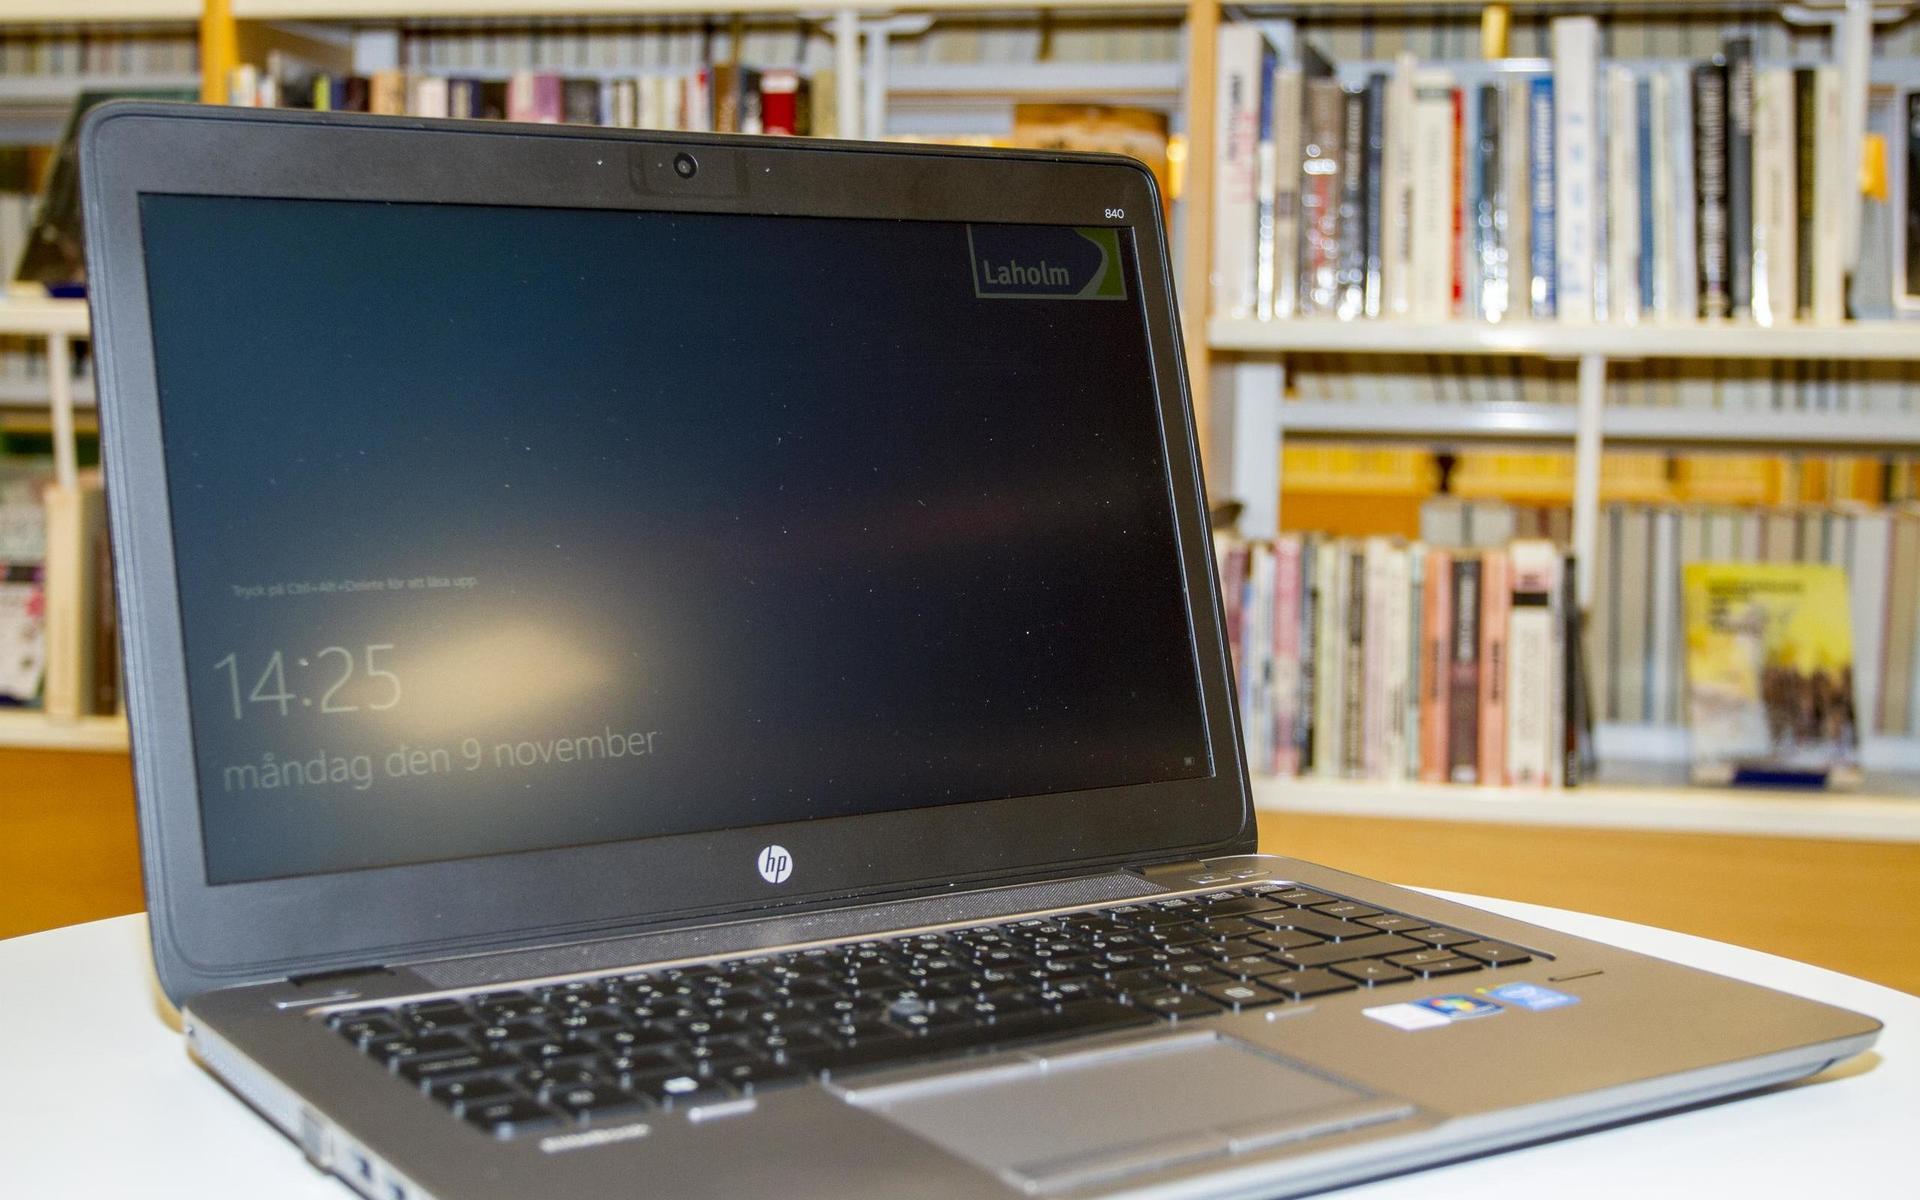 Stadsbiblioteket i Laholm ska börja låna ut bärbara datorer till vuxenutbildningens elever.